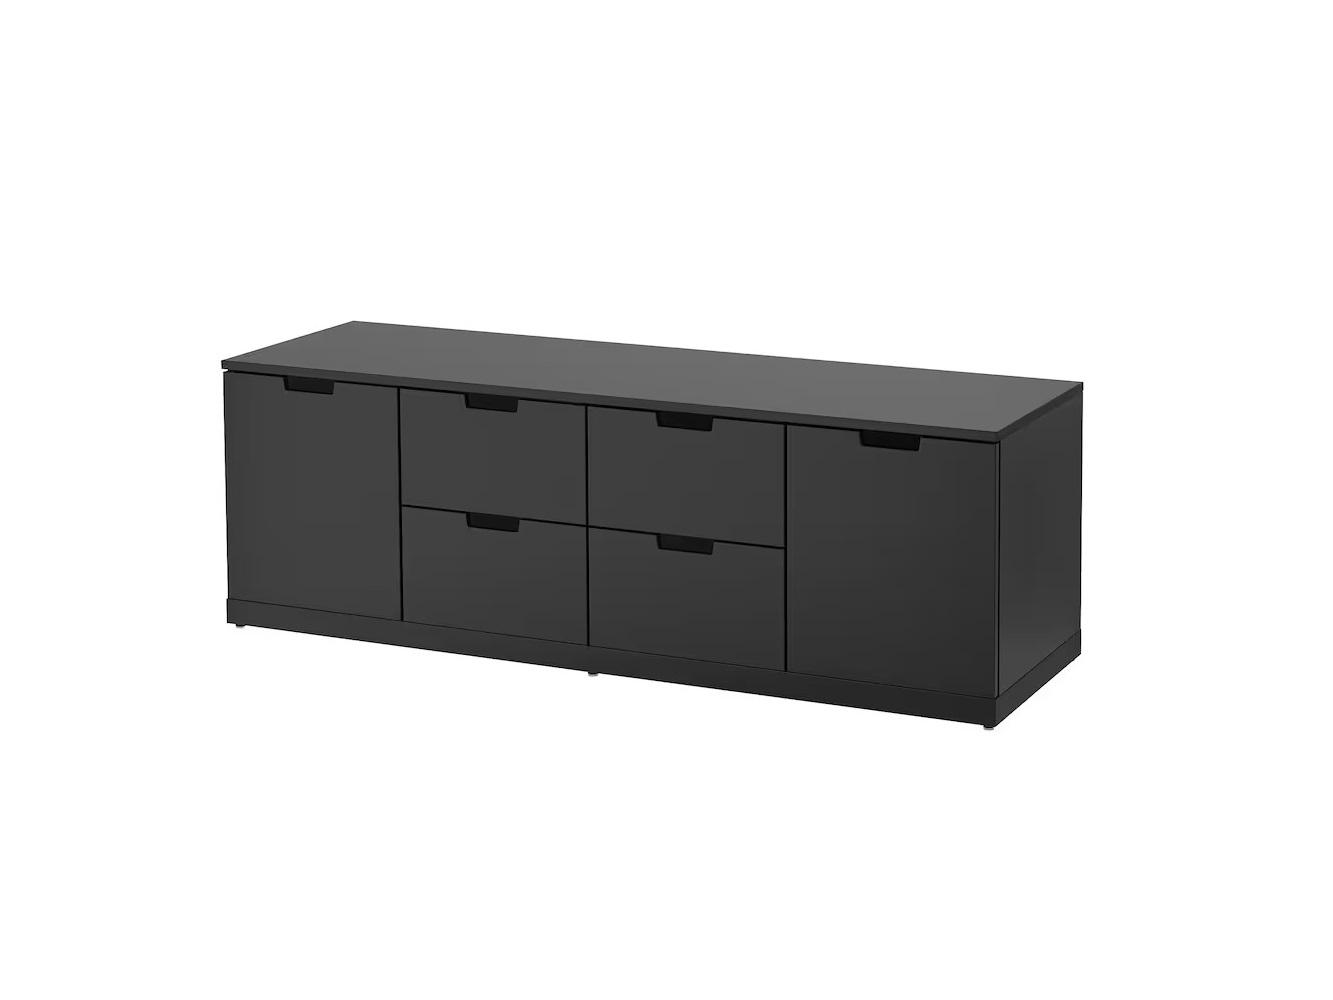 Комод Нордли 36 black ИКЕА (IKEA) изображение товара